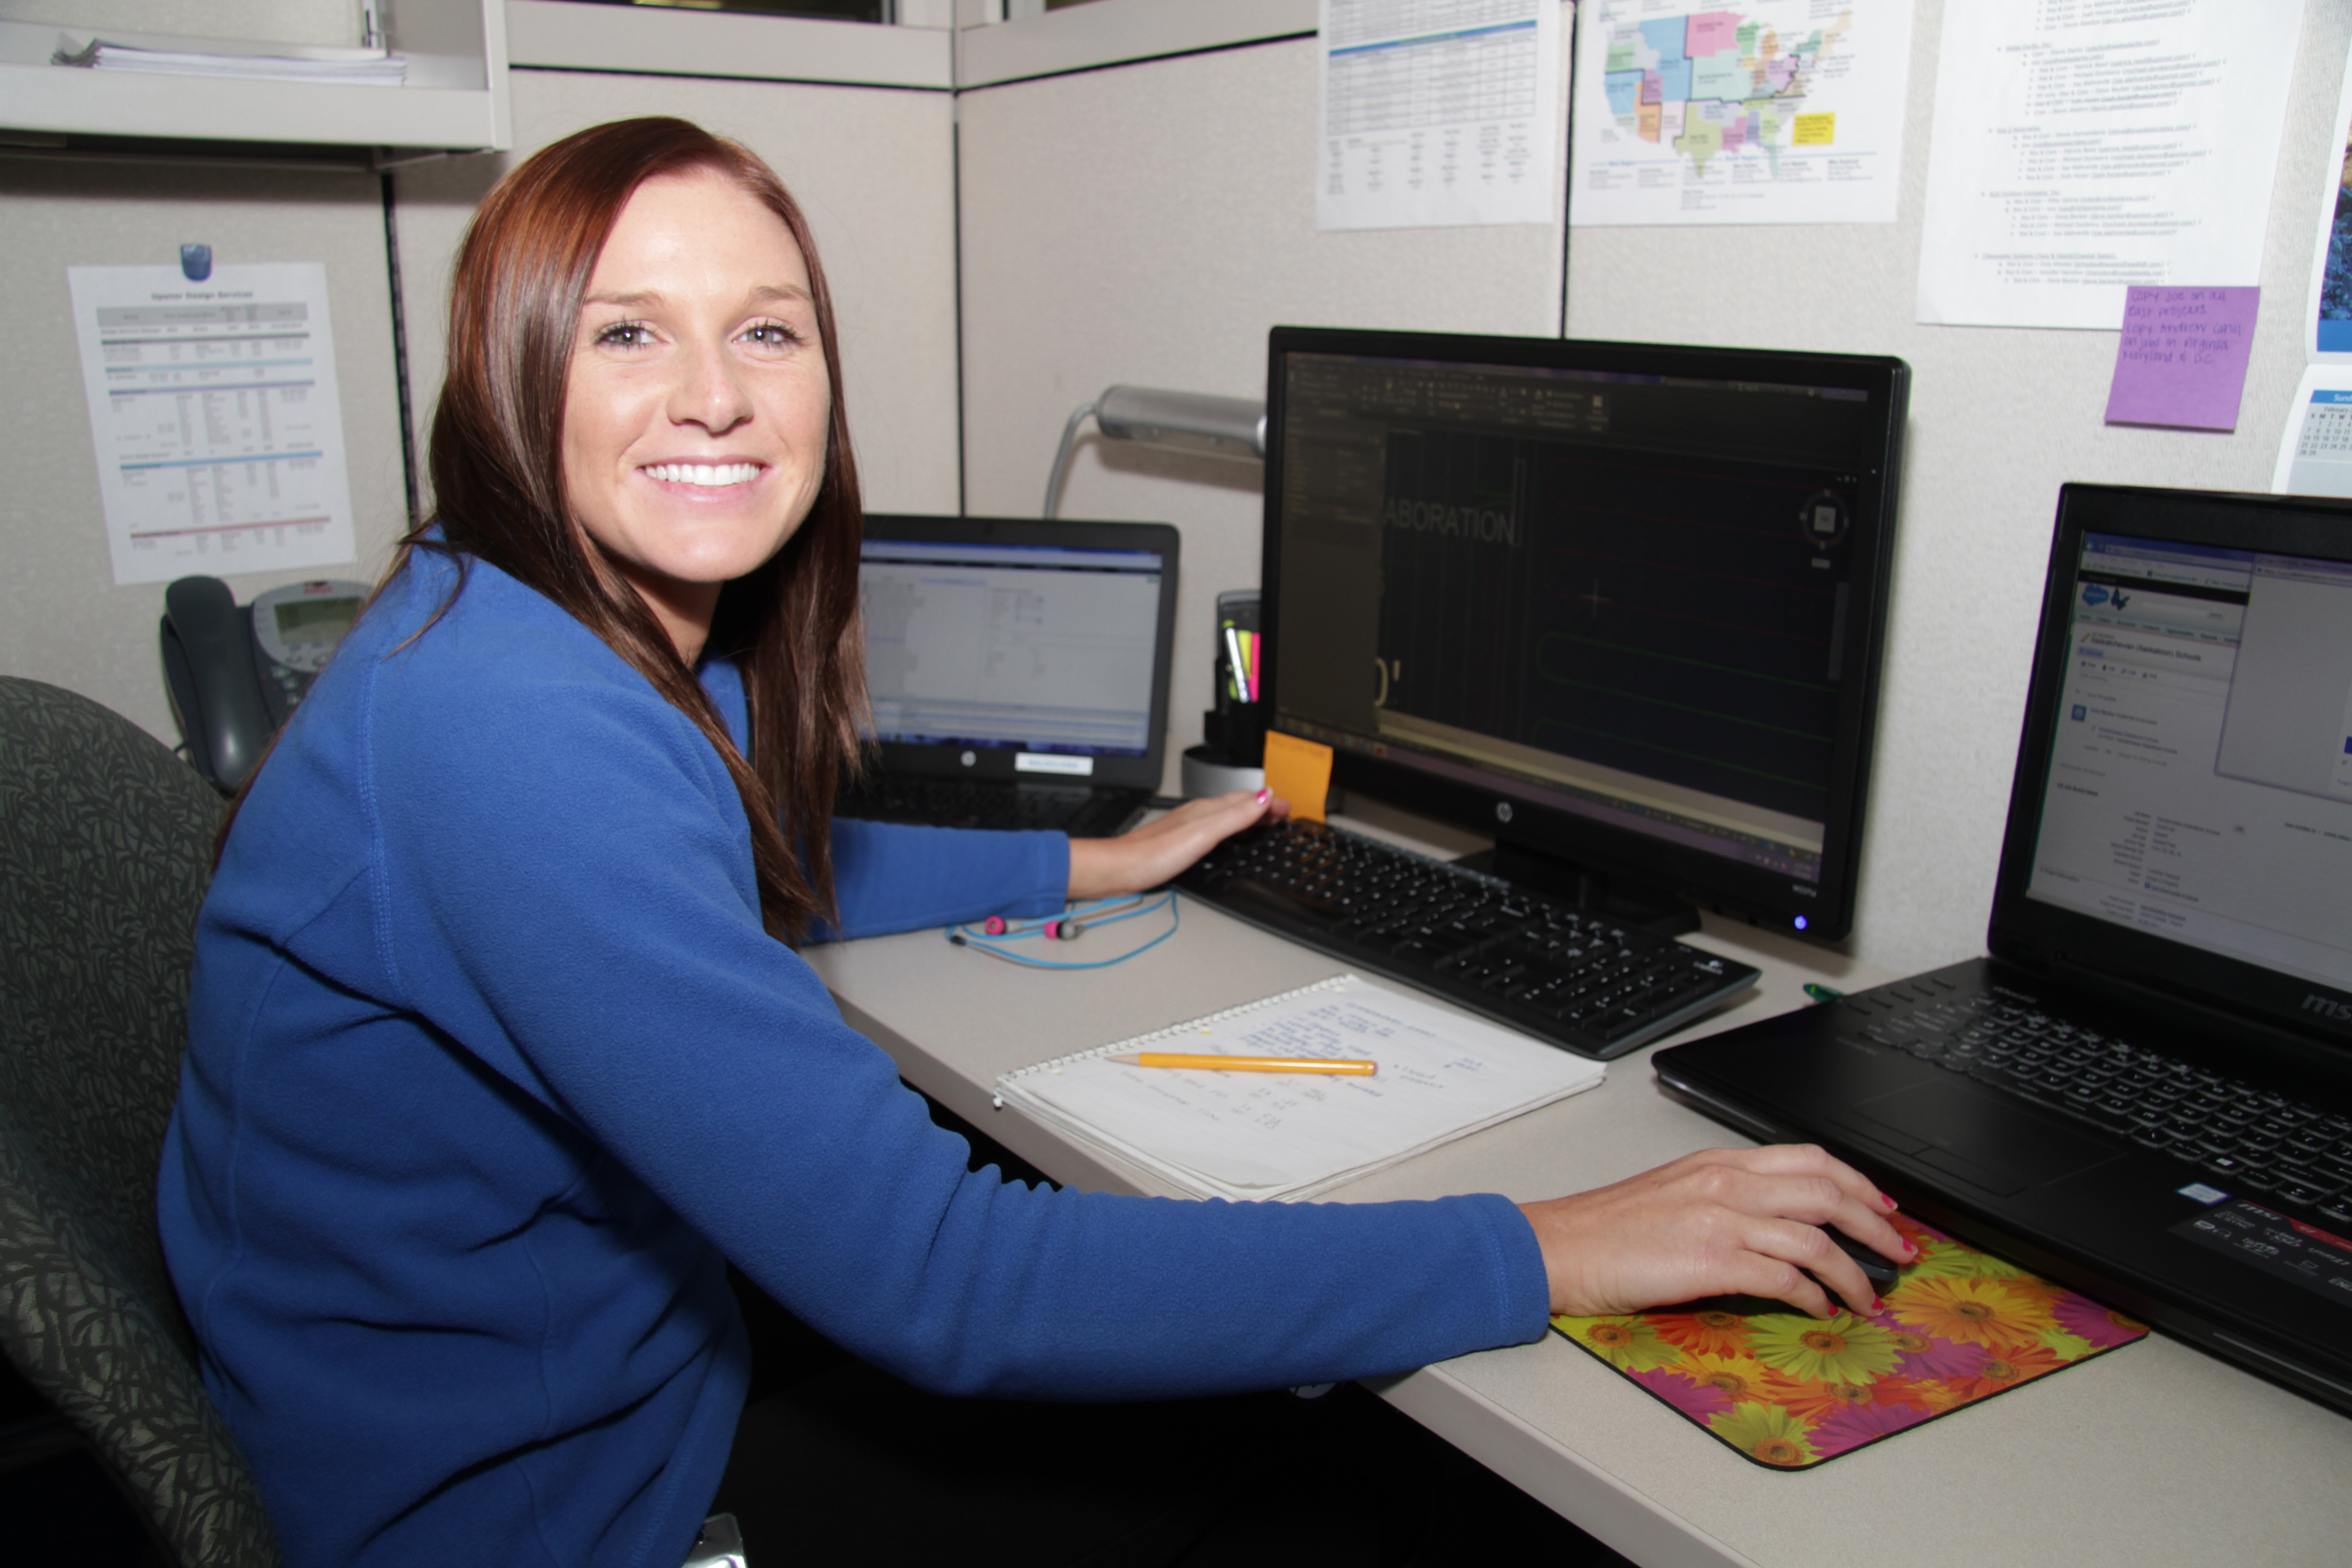 Female Uponor Design Services representative happy at her desk